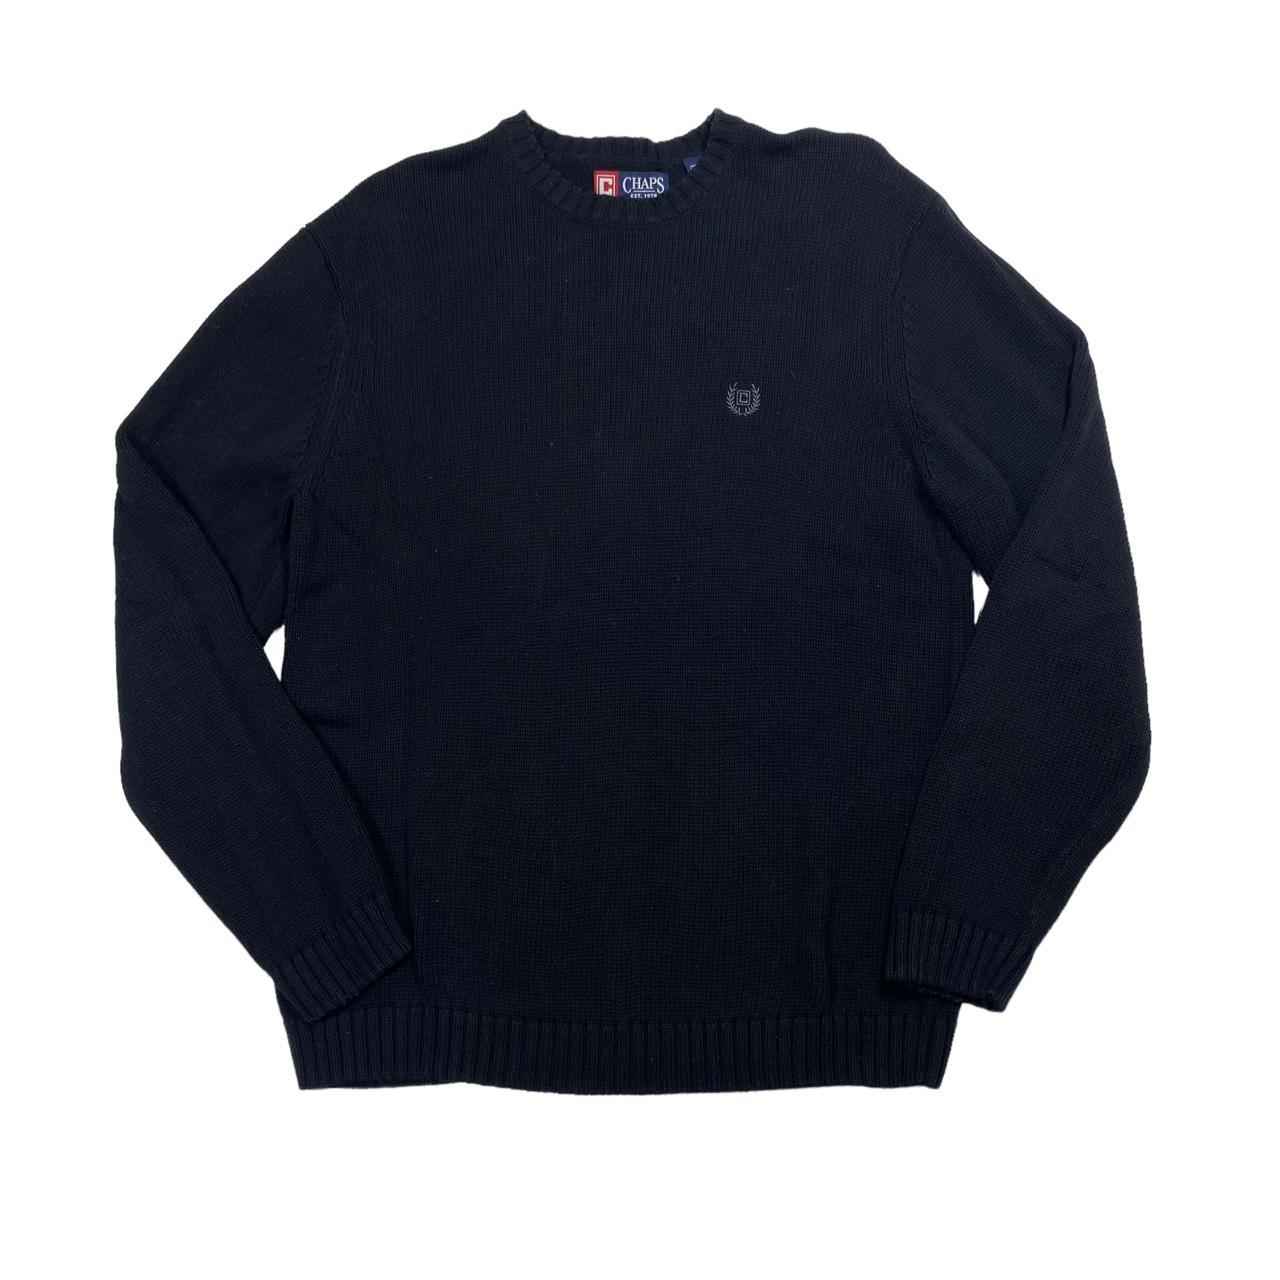 Chaps basic black cotton sweater -men’s size... - Depop